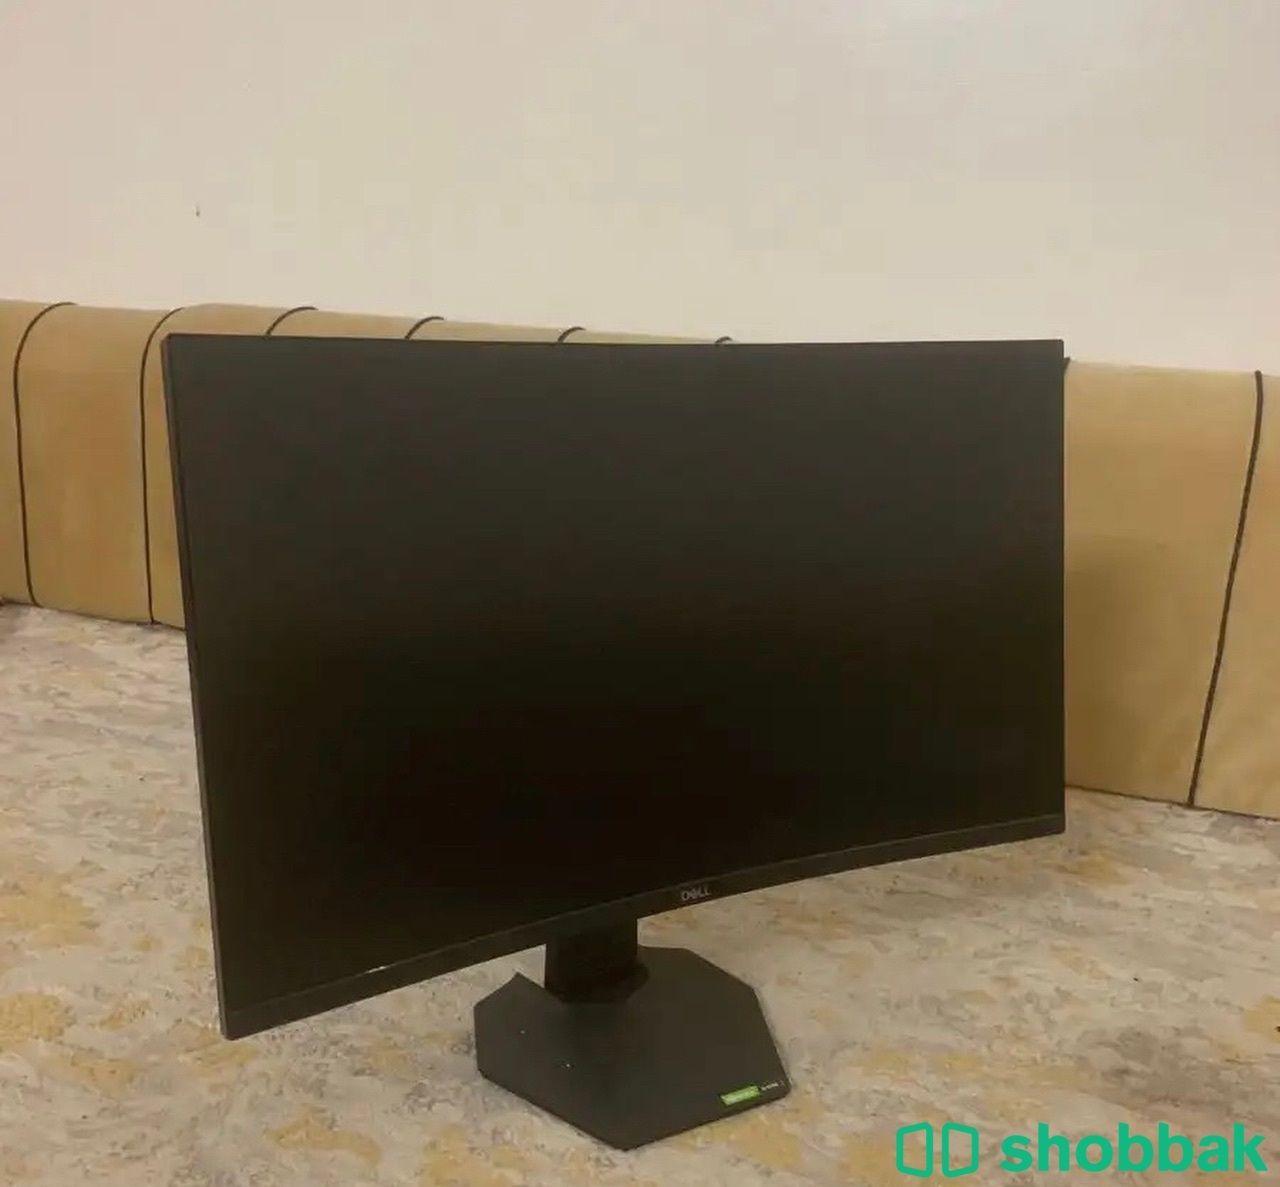 شاشة قيمنق مستعملة للبيع Shobbak Saudi Arabia